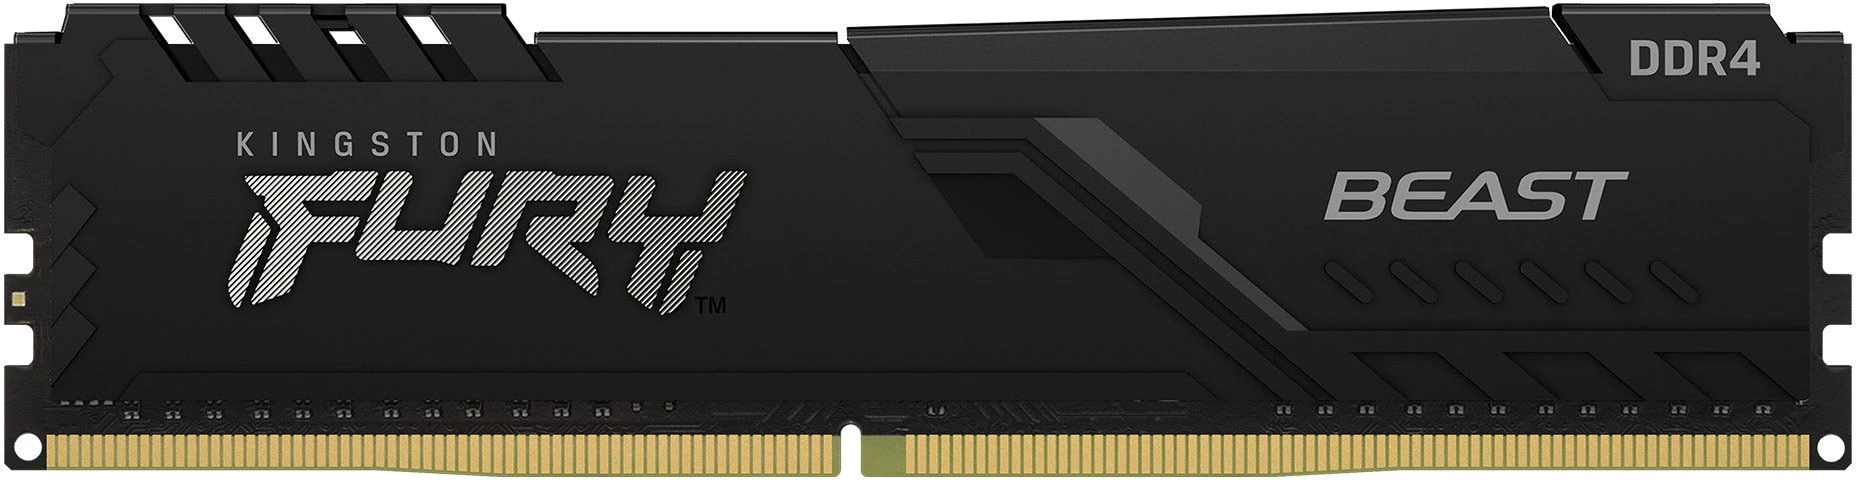 Kingston Fury Beast DDR4 1x16Gb 3200 МГц CL16 двухранговая